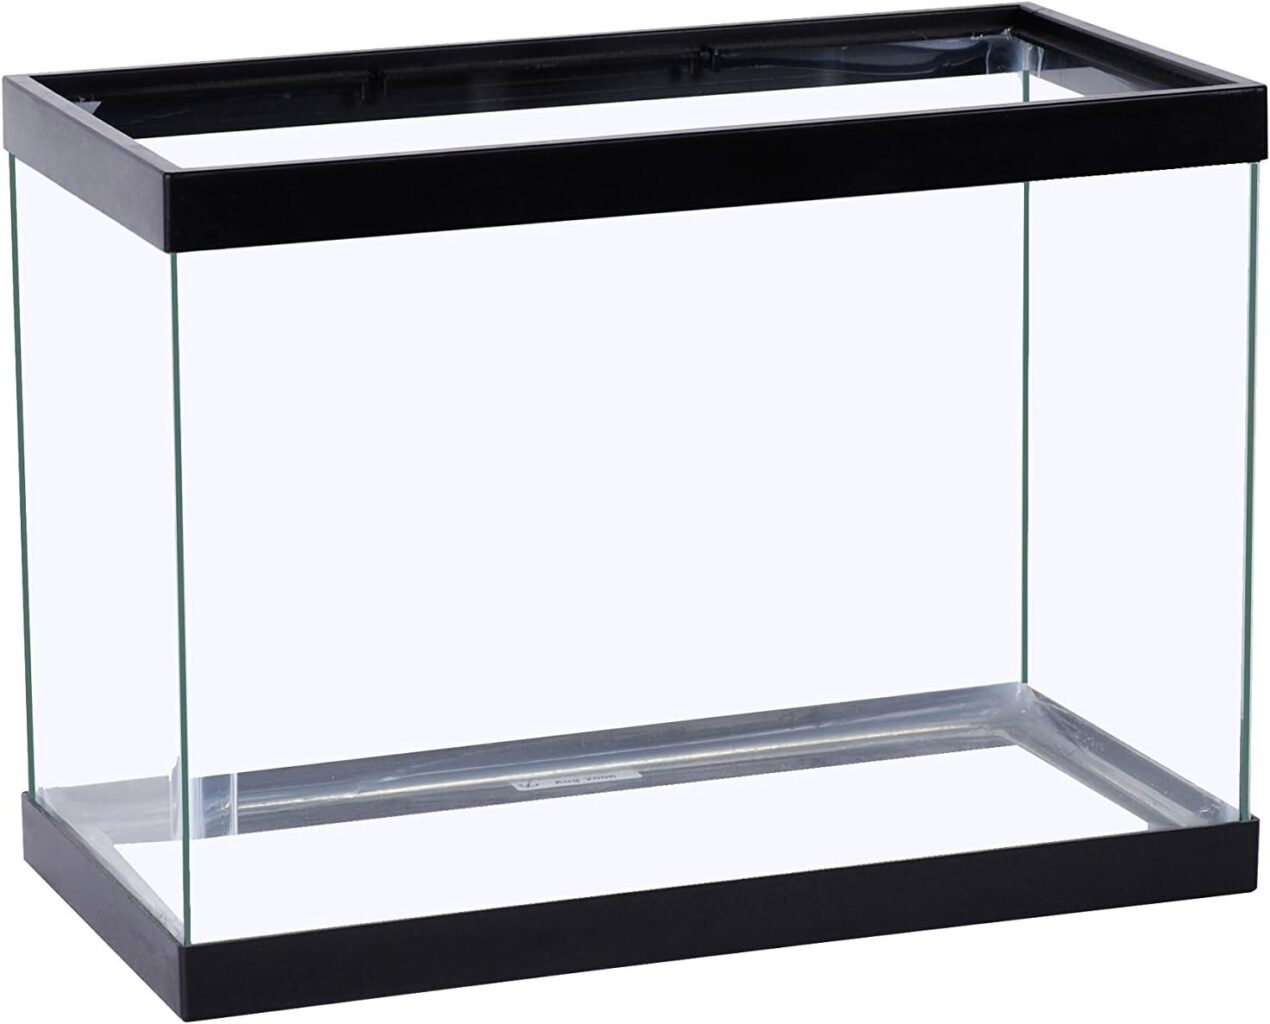 Tetra Glass Aquarium 5.5 Gallons, Rectangular Fish Tank